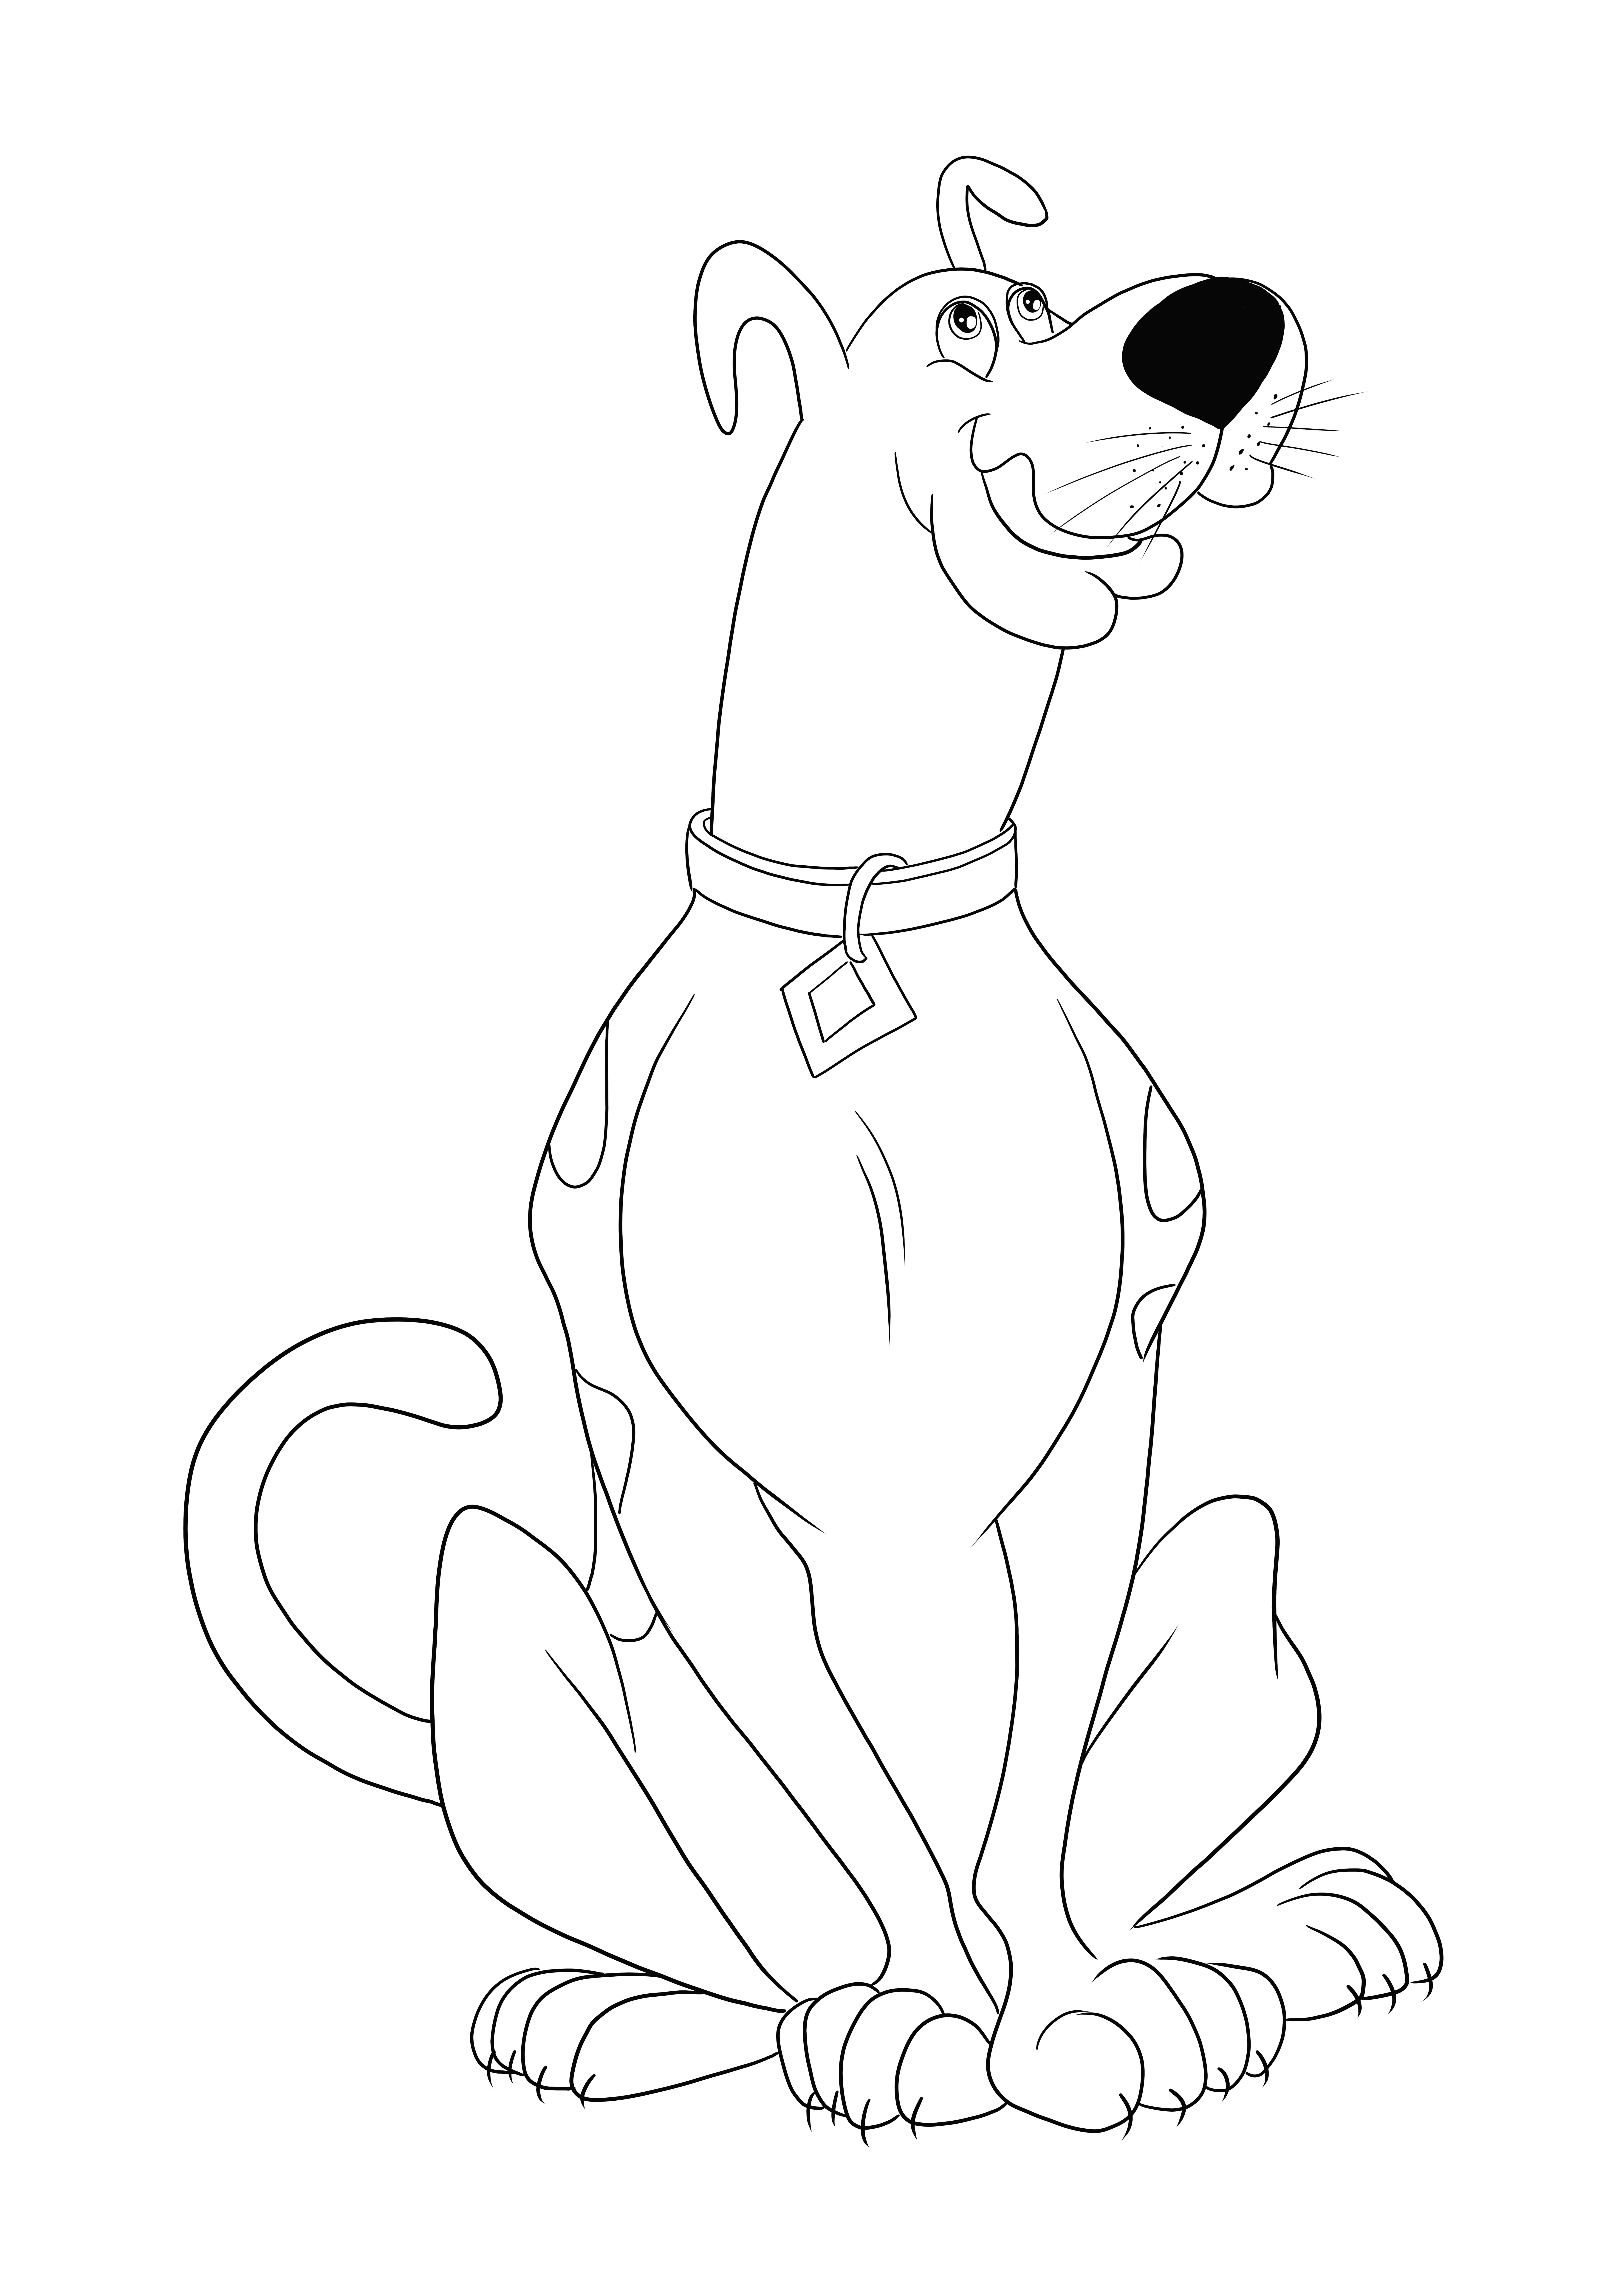 Ecco la nostra famosa disegni da colorare di Scooby Doo da stampare o scaricare gratuitamente